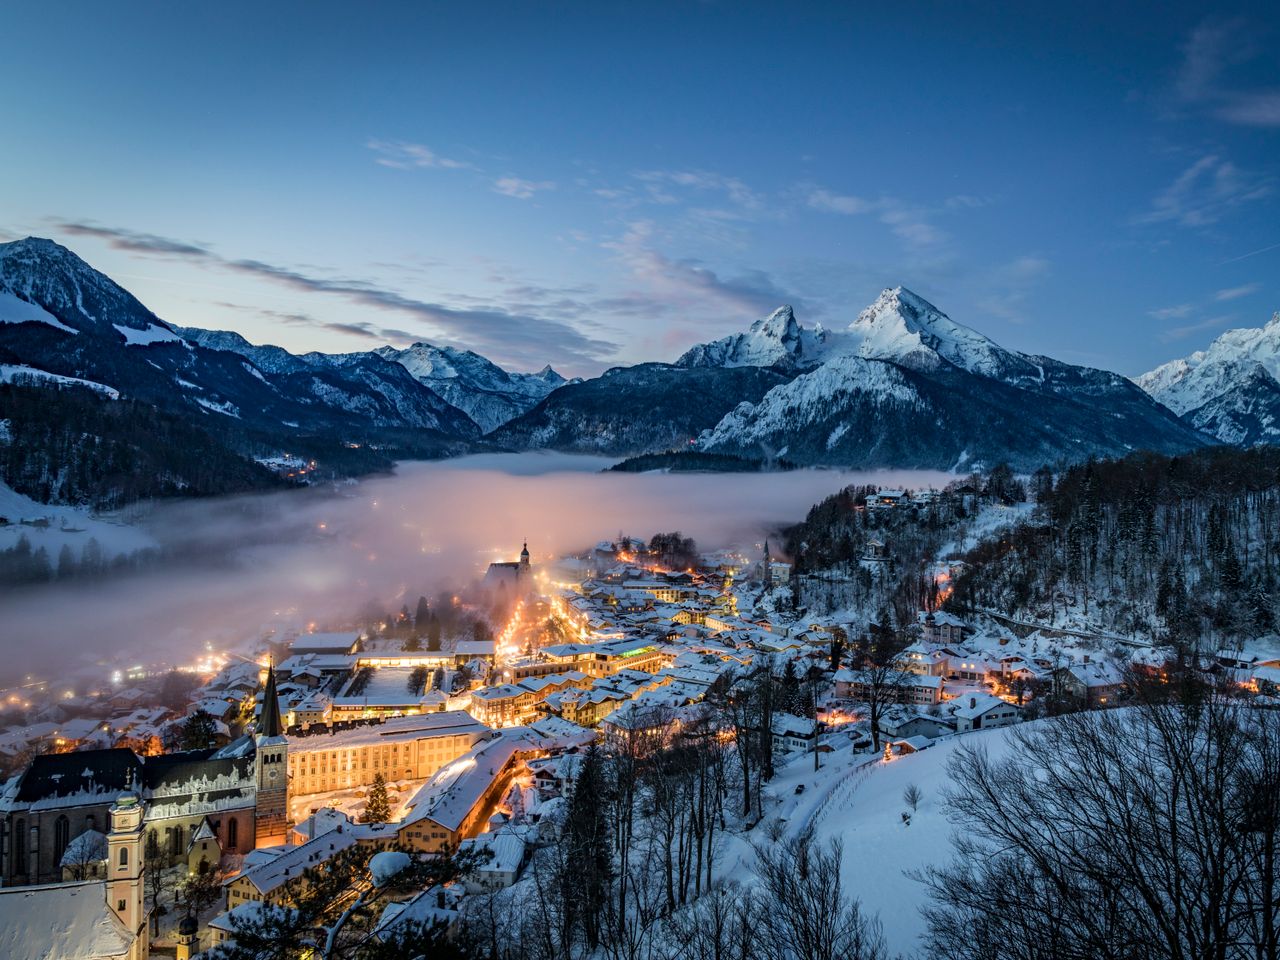 7=6 Winterspecial im malerischen Berchtesgadener Land